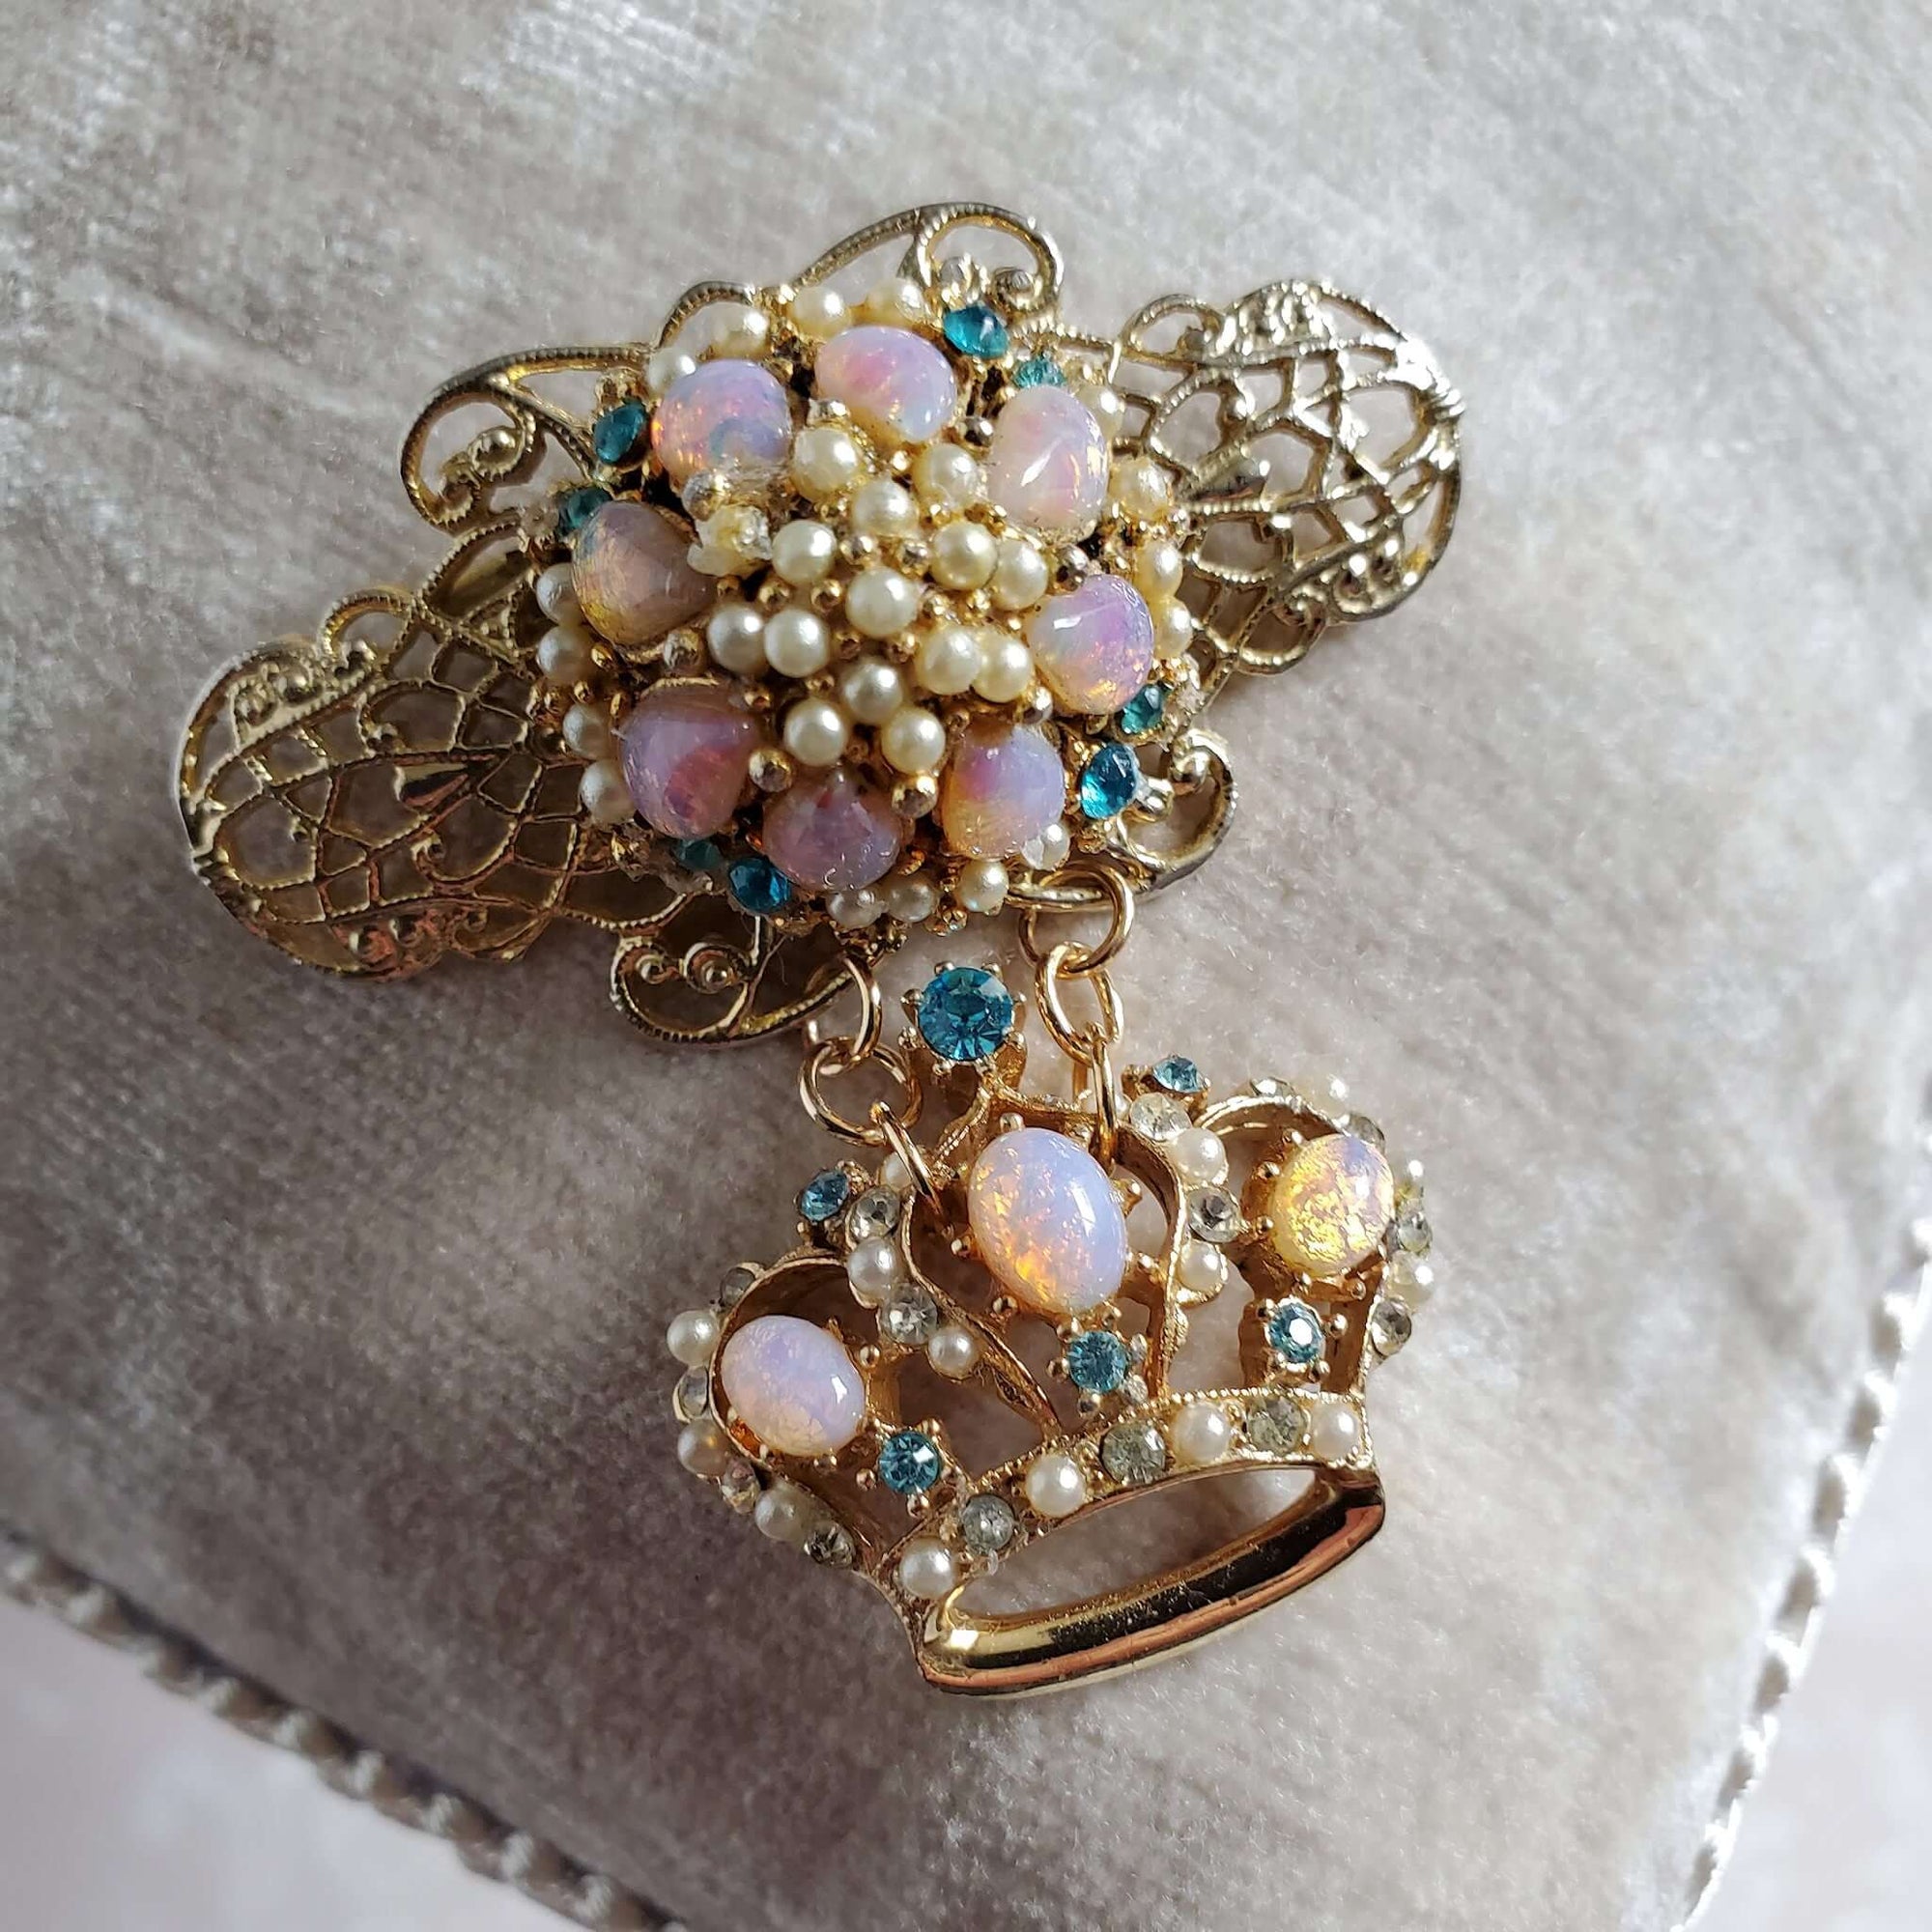 Vintage Handmade Crown Brooch Pin